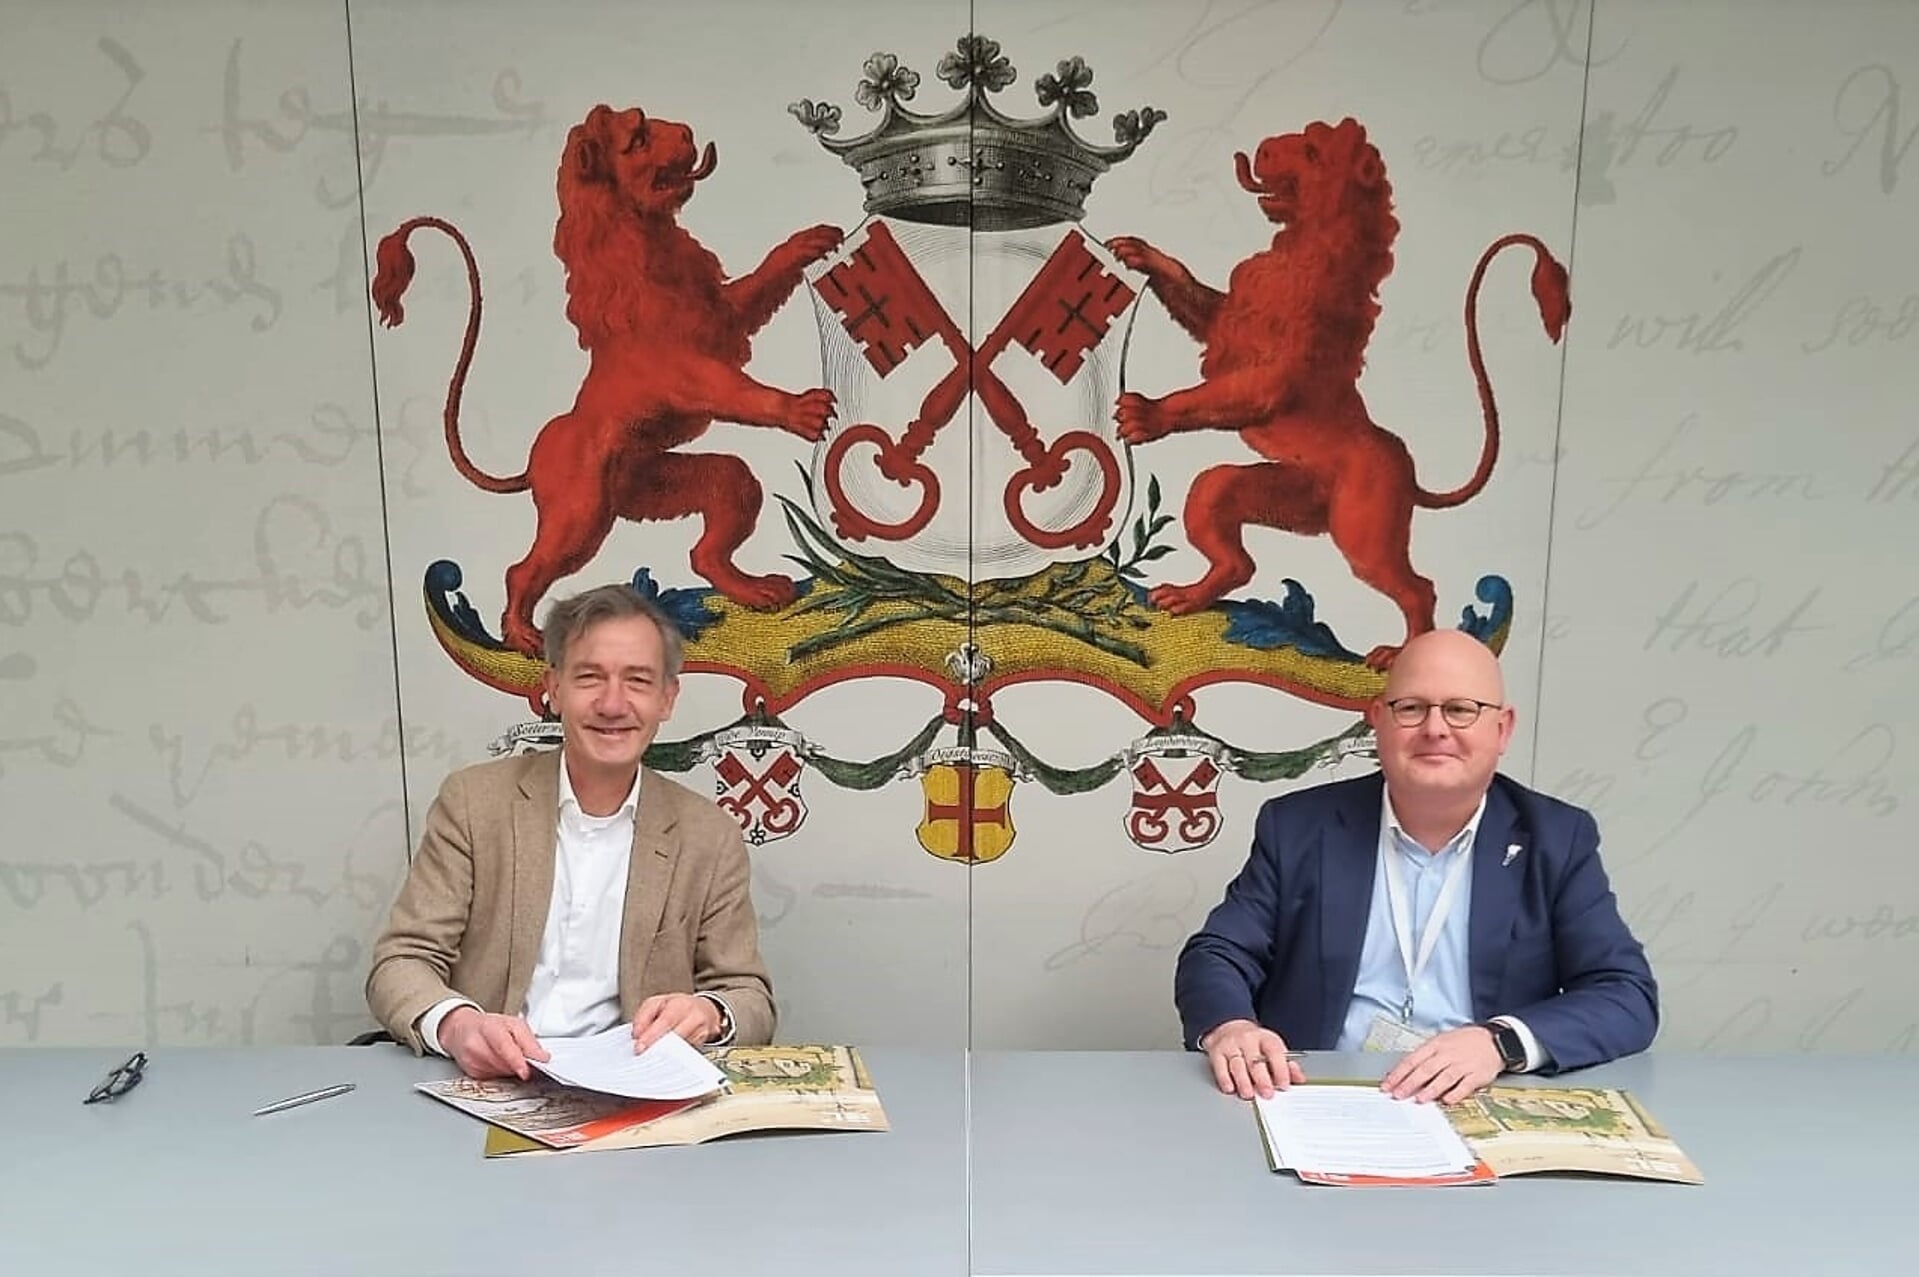 Ondertekening van de overdracht door wethouder Matthijs Huizing en Cor de Graaf van Erfgoed Leiden en omstreken.